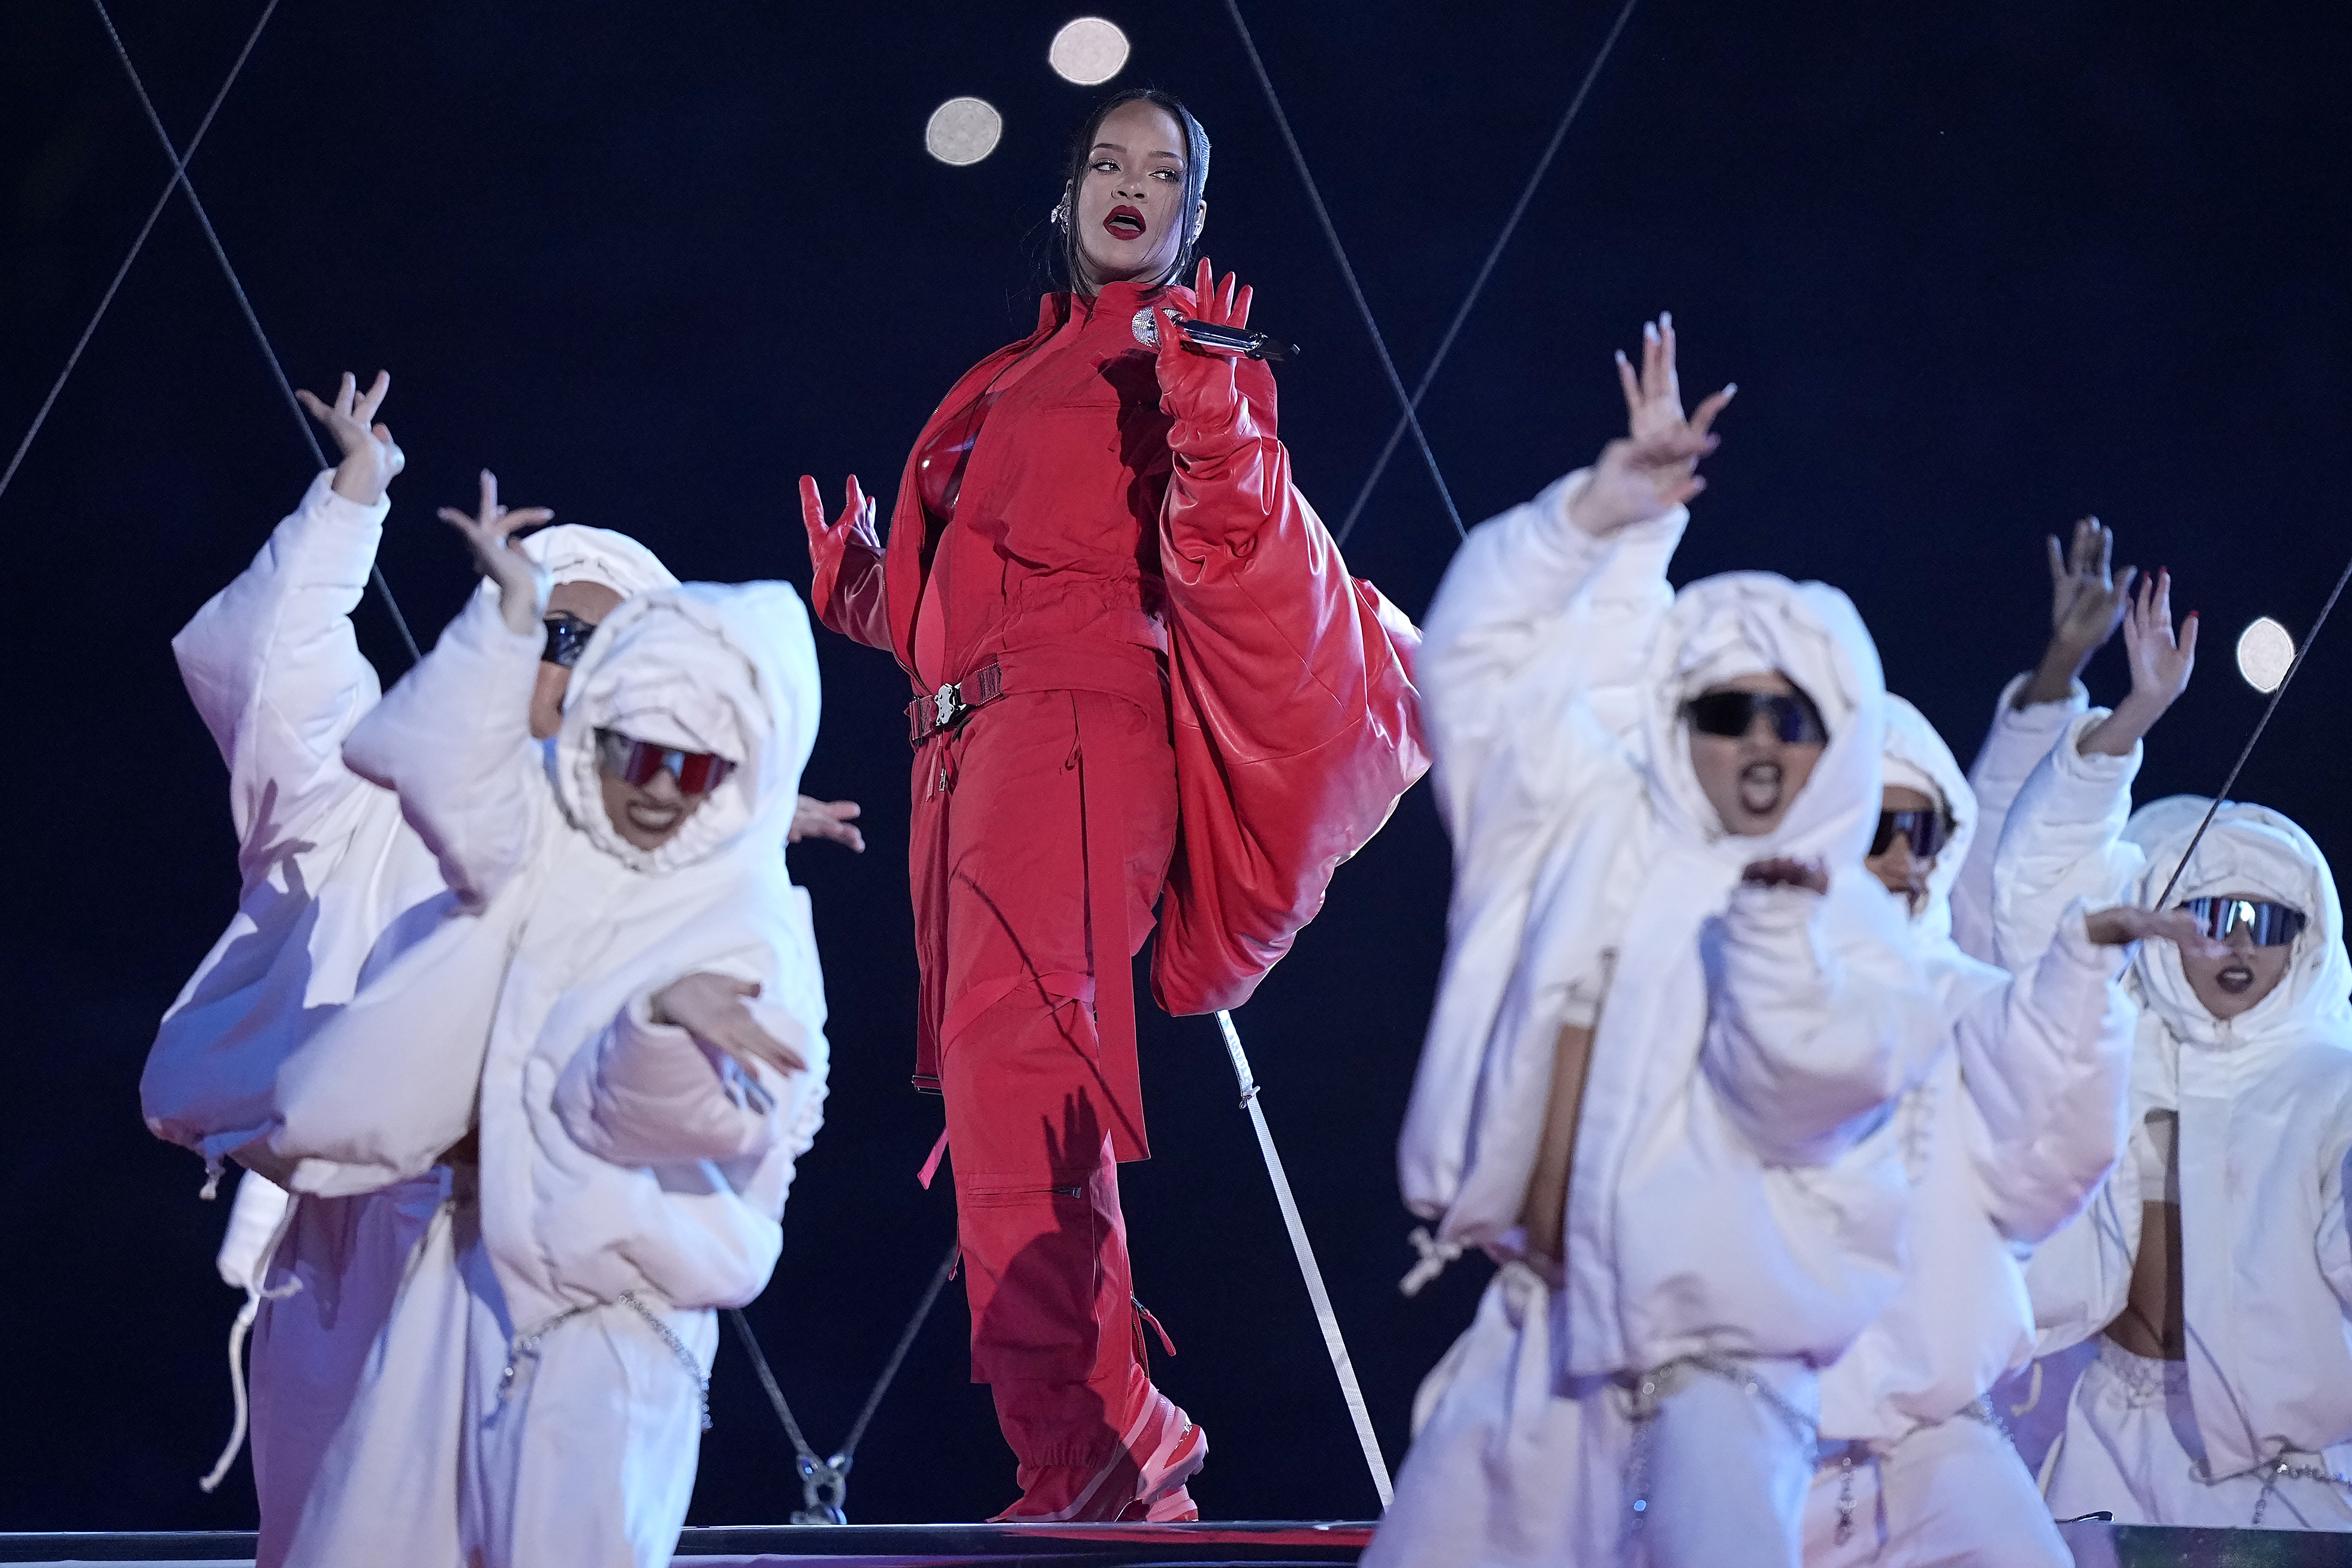 Baixar Pono De Rihanna - Rihanna's halftime show drew over 100 FCC complaints, reports say